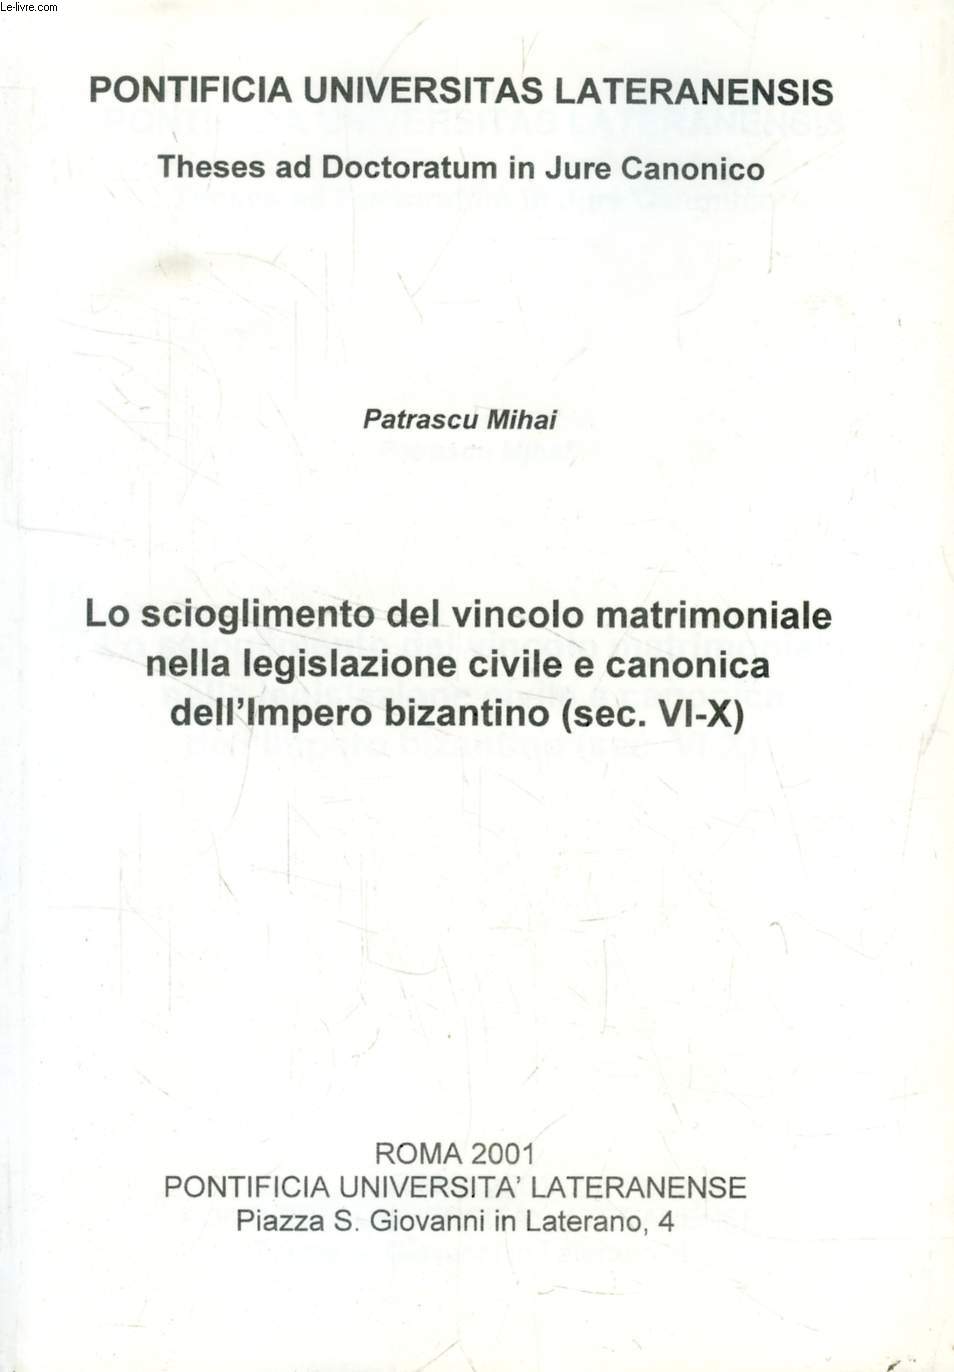 LE SCIOGLIMENTO DEL VINCOLO MATRIMONIALE NELLA LEGISLAZIONE CIVILE E CANONICA DELL'IMPERO BIZANTINO (SEC. VI-X) (TESI)